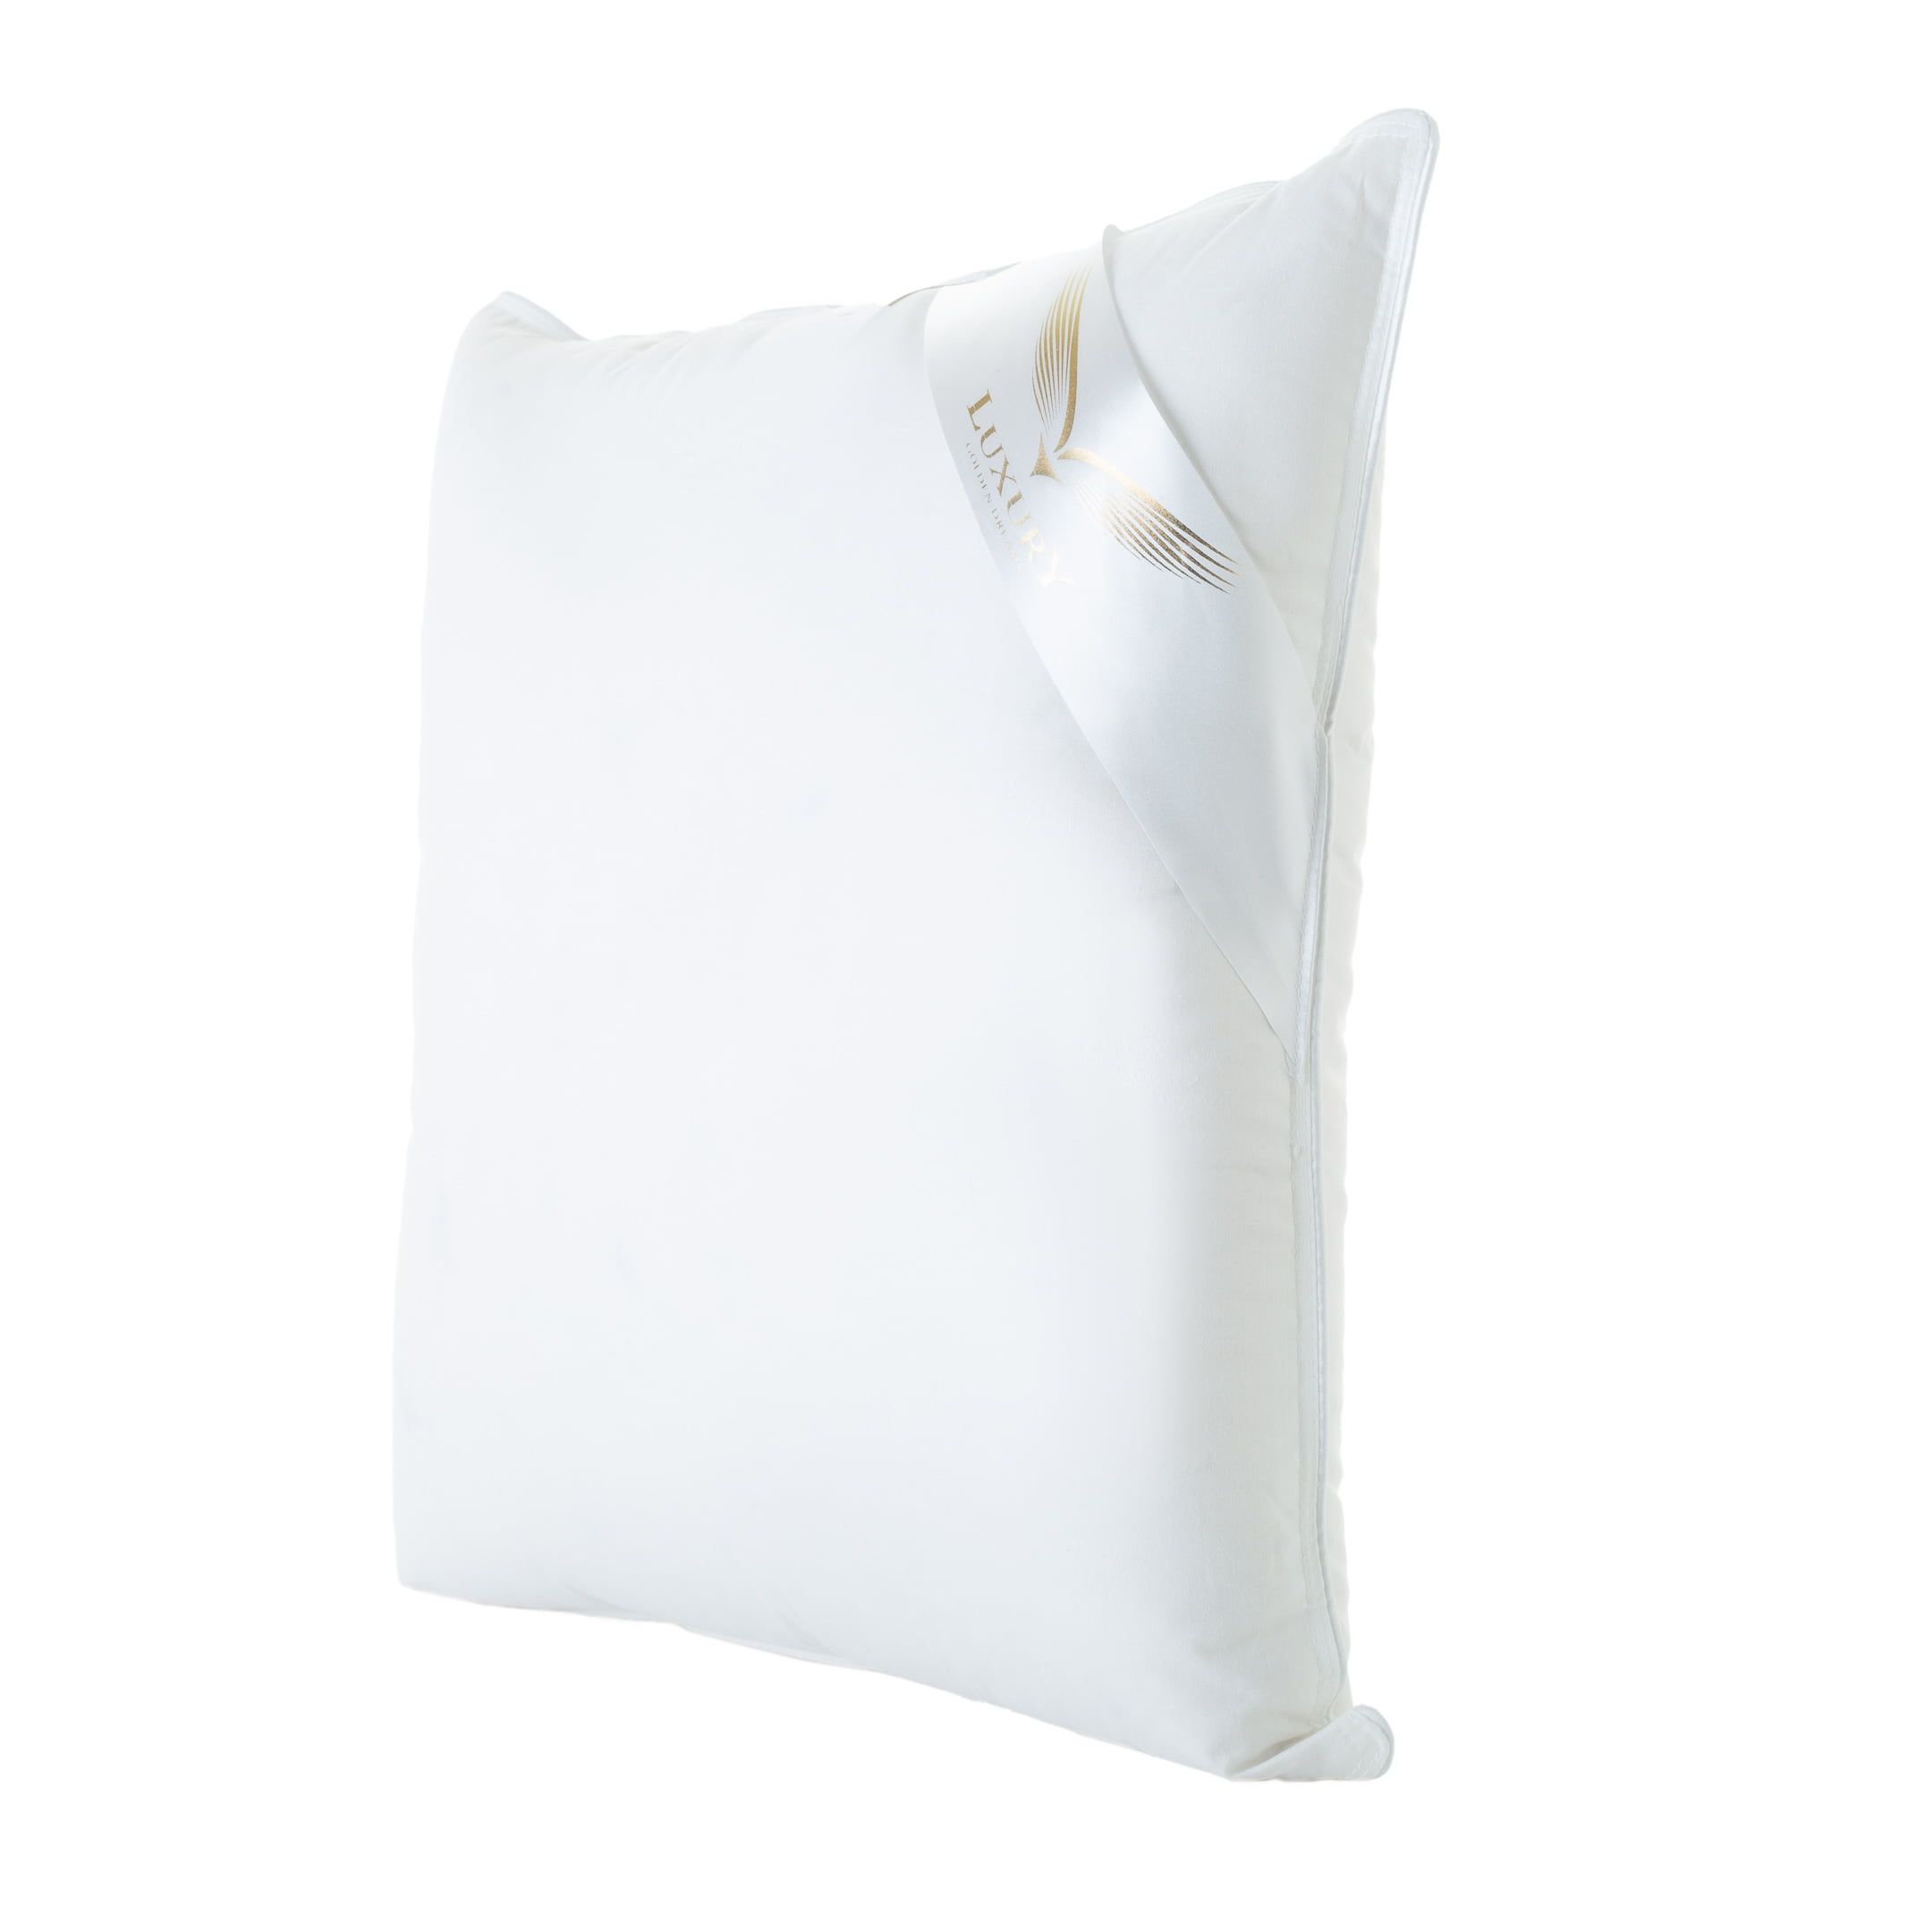 Zdjęcie typu packshot białej poduszki puchowej